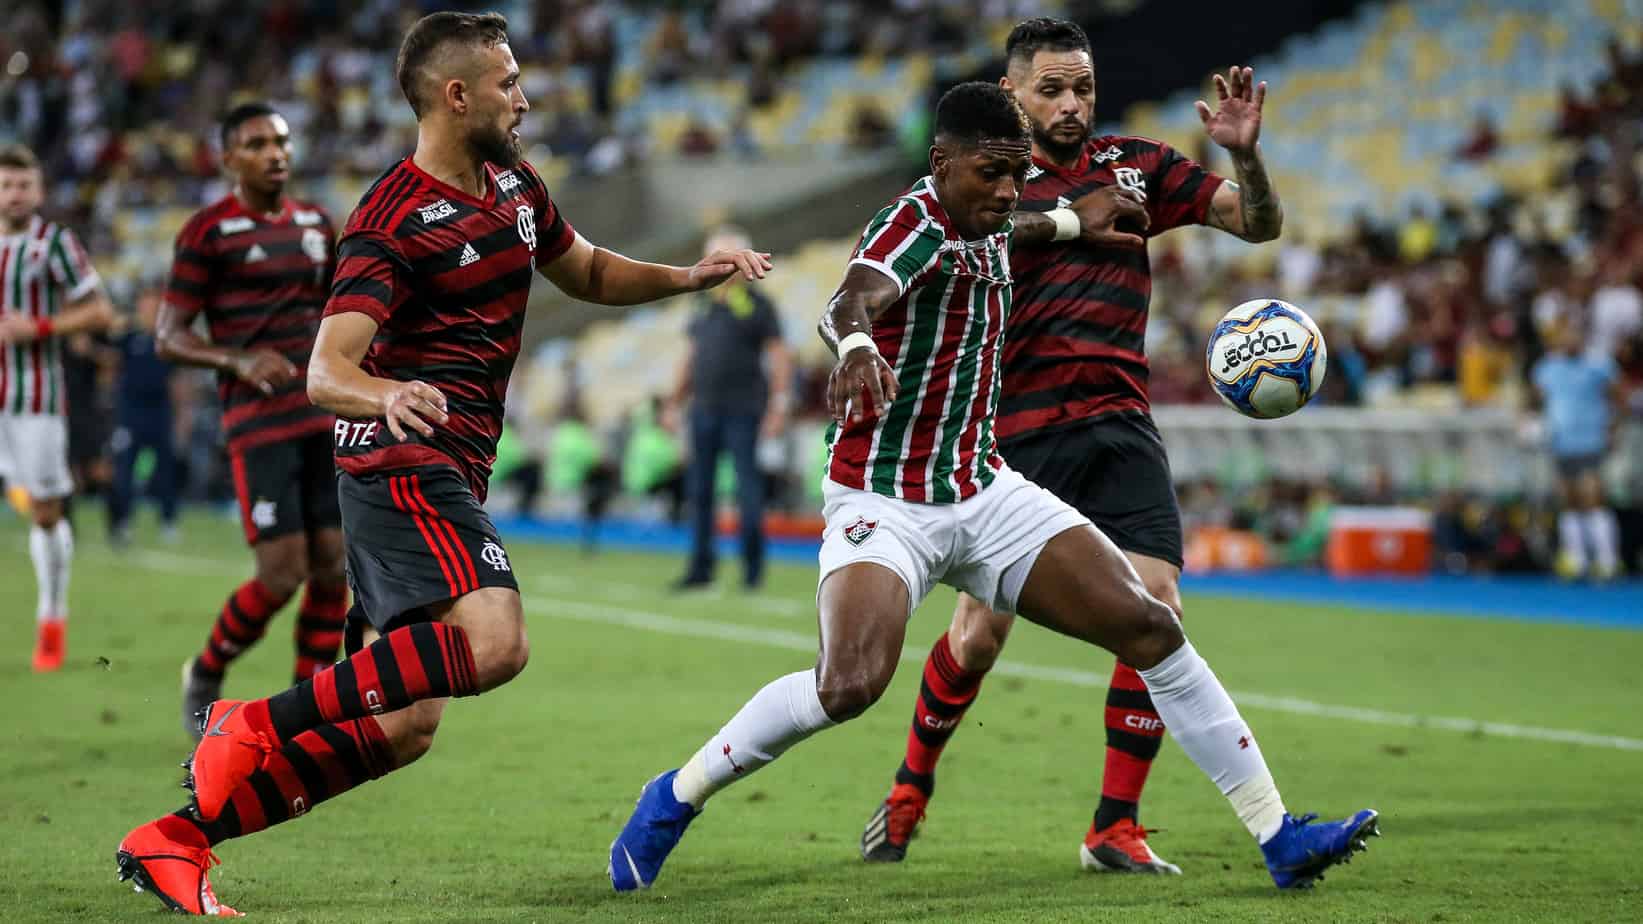 Vuelve el Clásico das Multidões: Flamengo vs. Fluminense – Cuotas de apuestas y vista previa